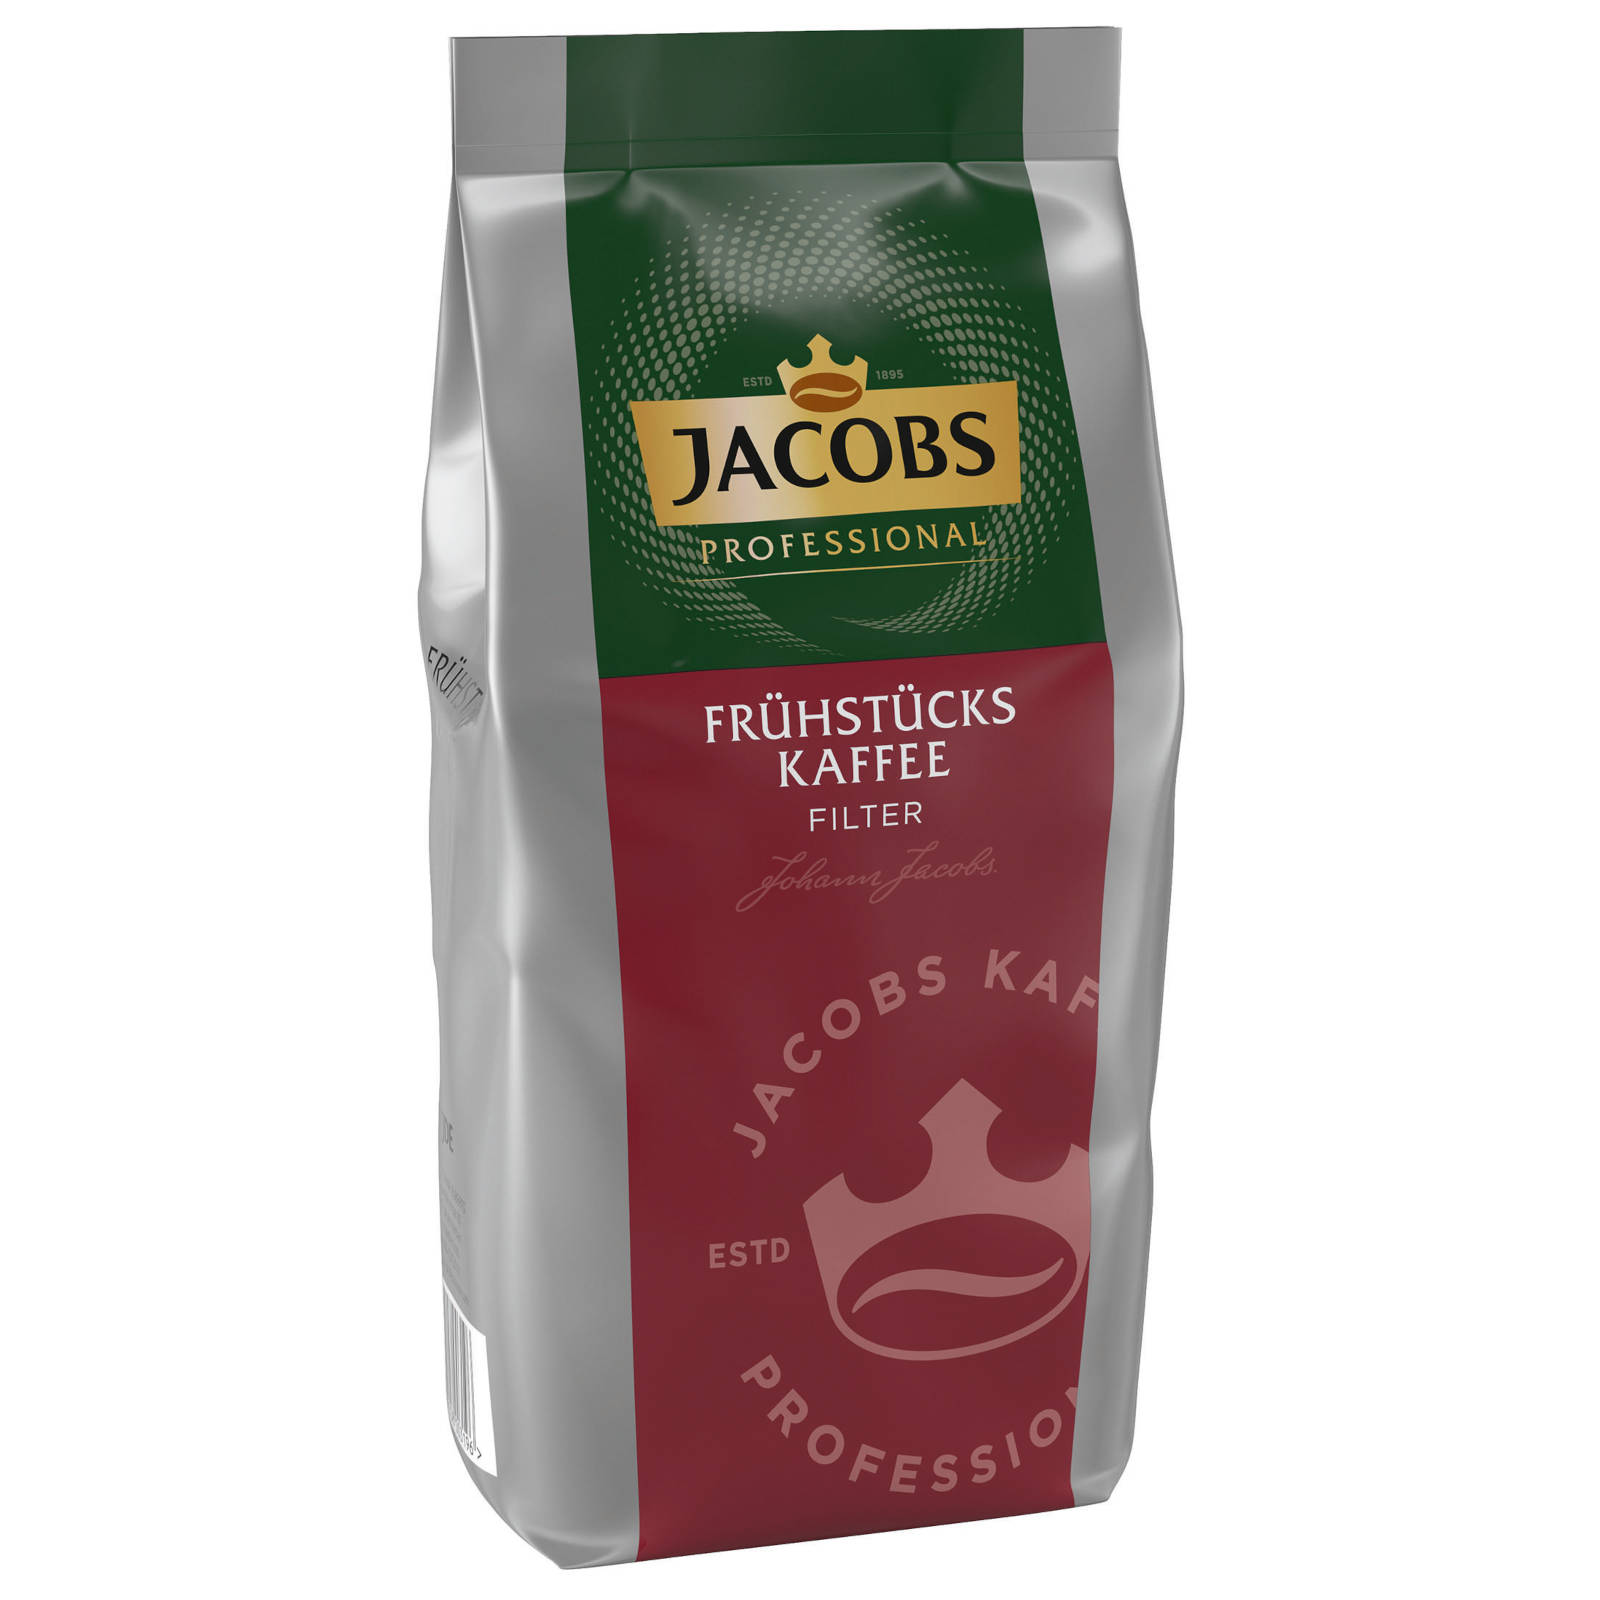 JACOBS Professional kg Press) Filterkaffee Frühstückskaffee 10x1 (Filter, French